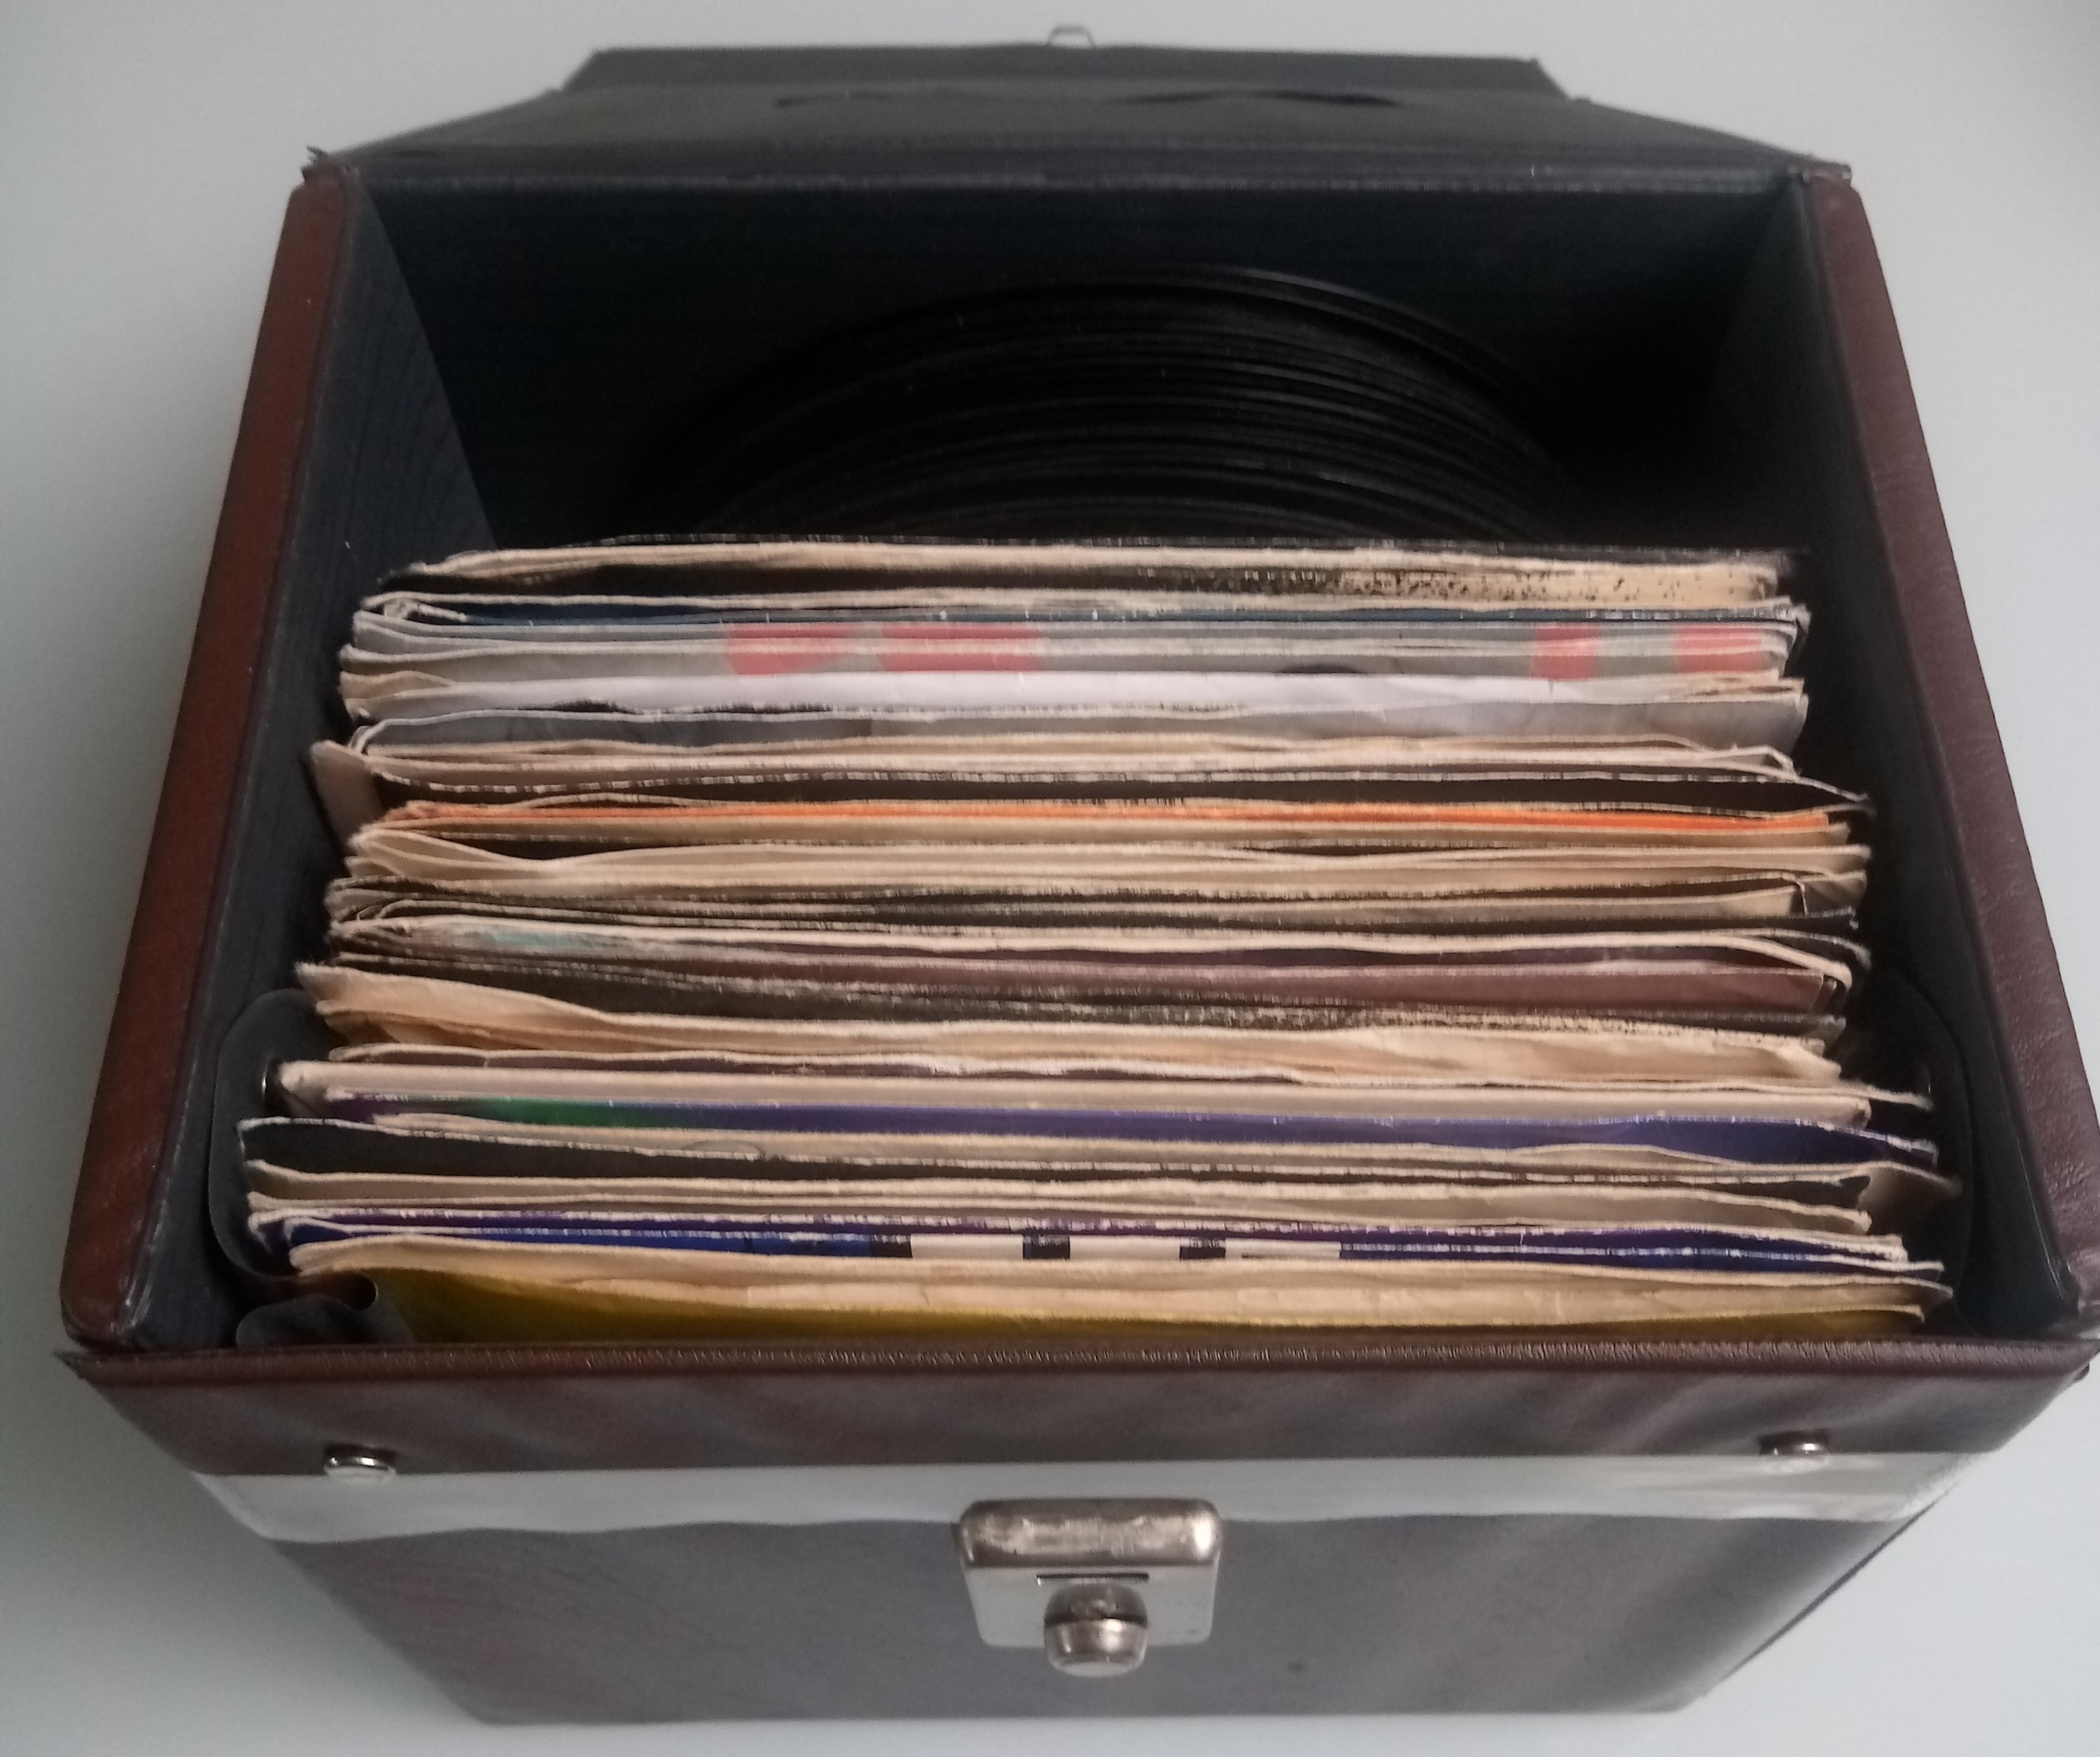 75 x Vinyl Records In Original Retro Case.